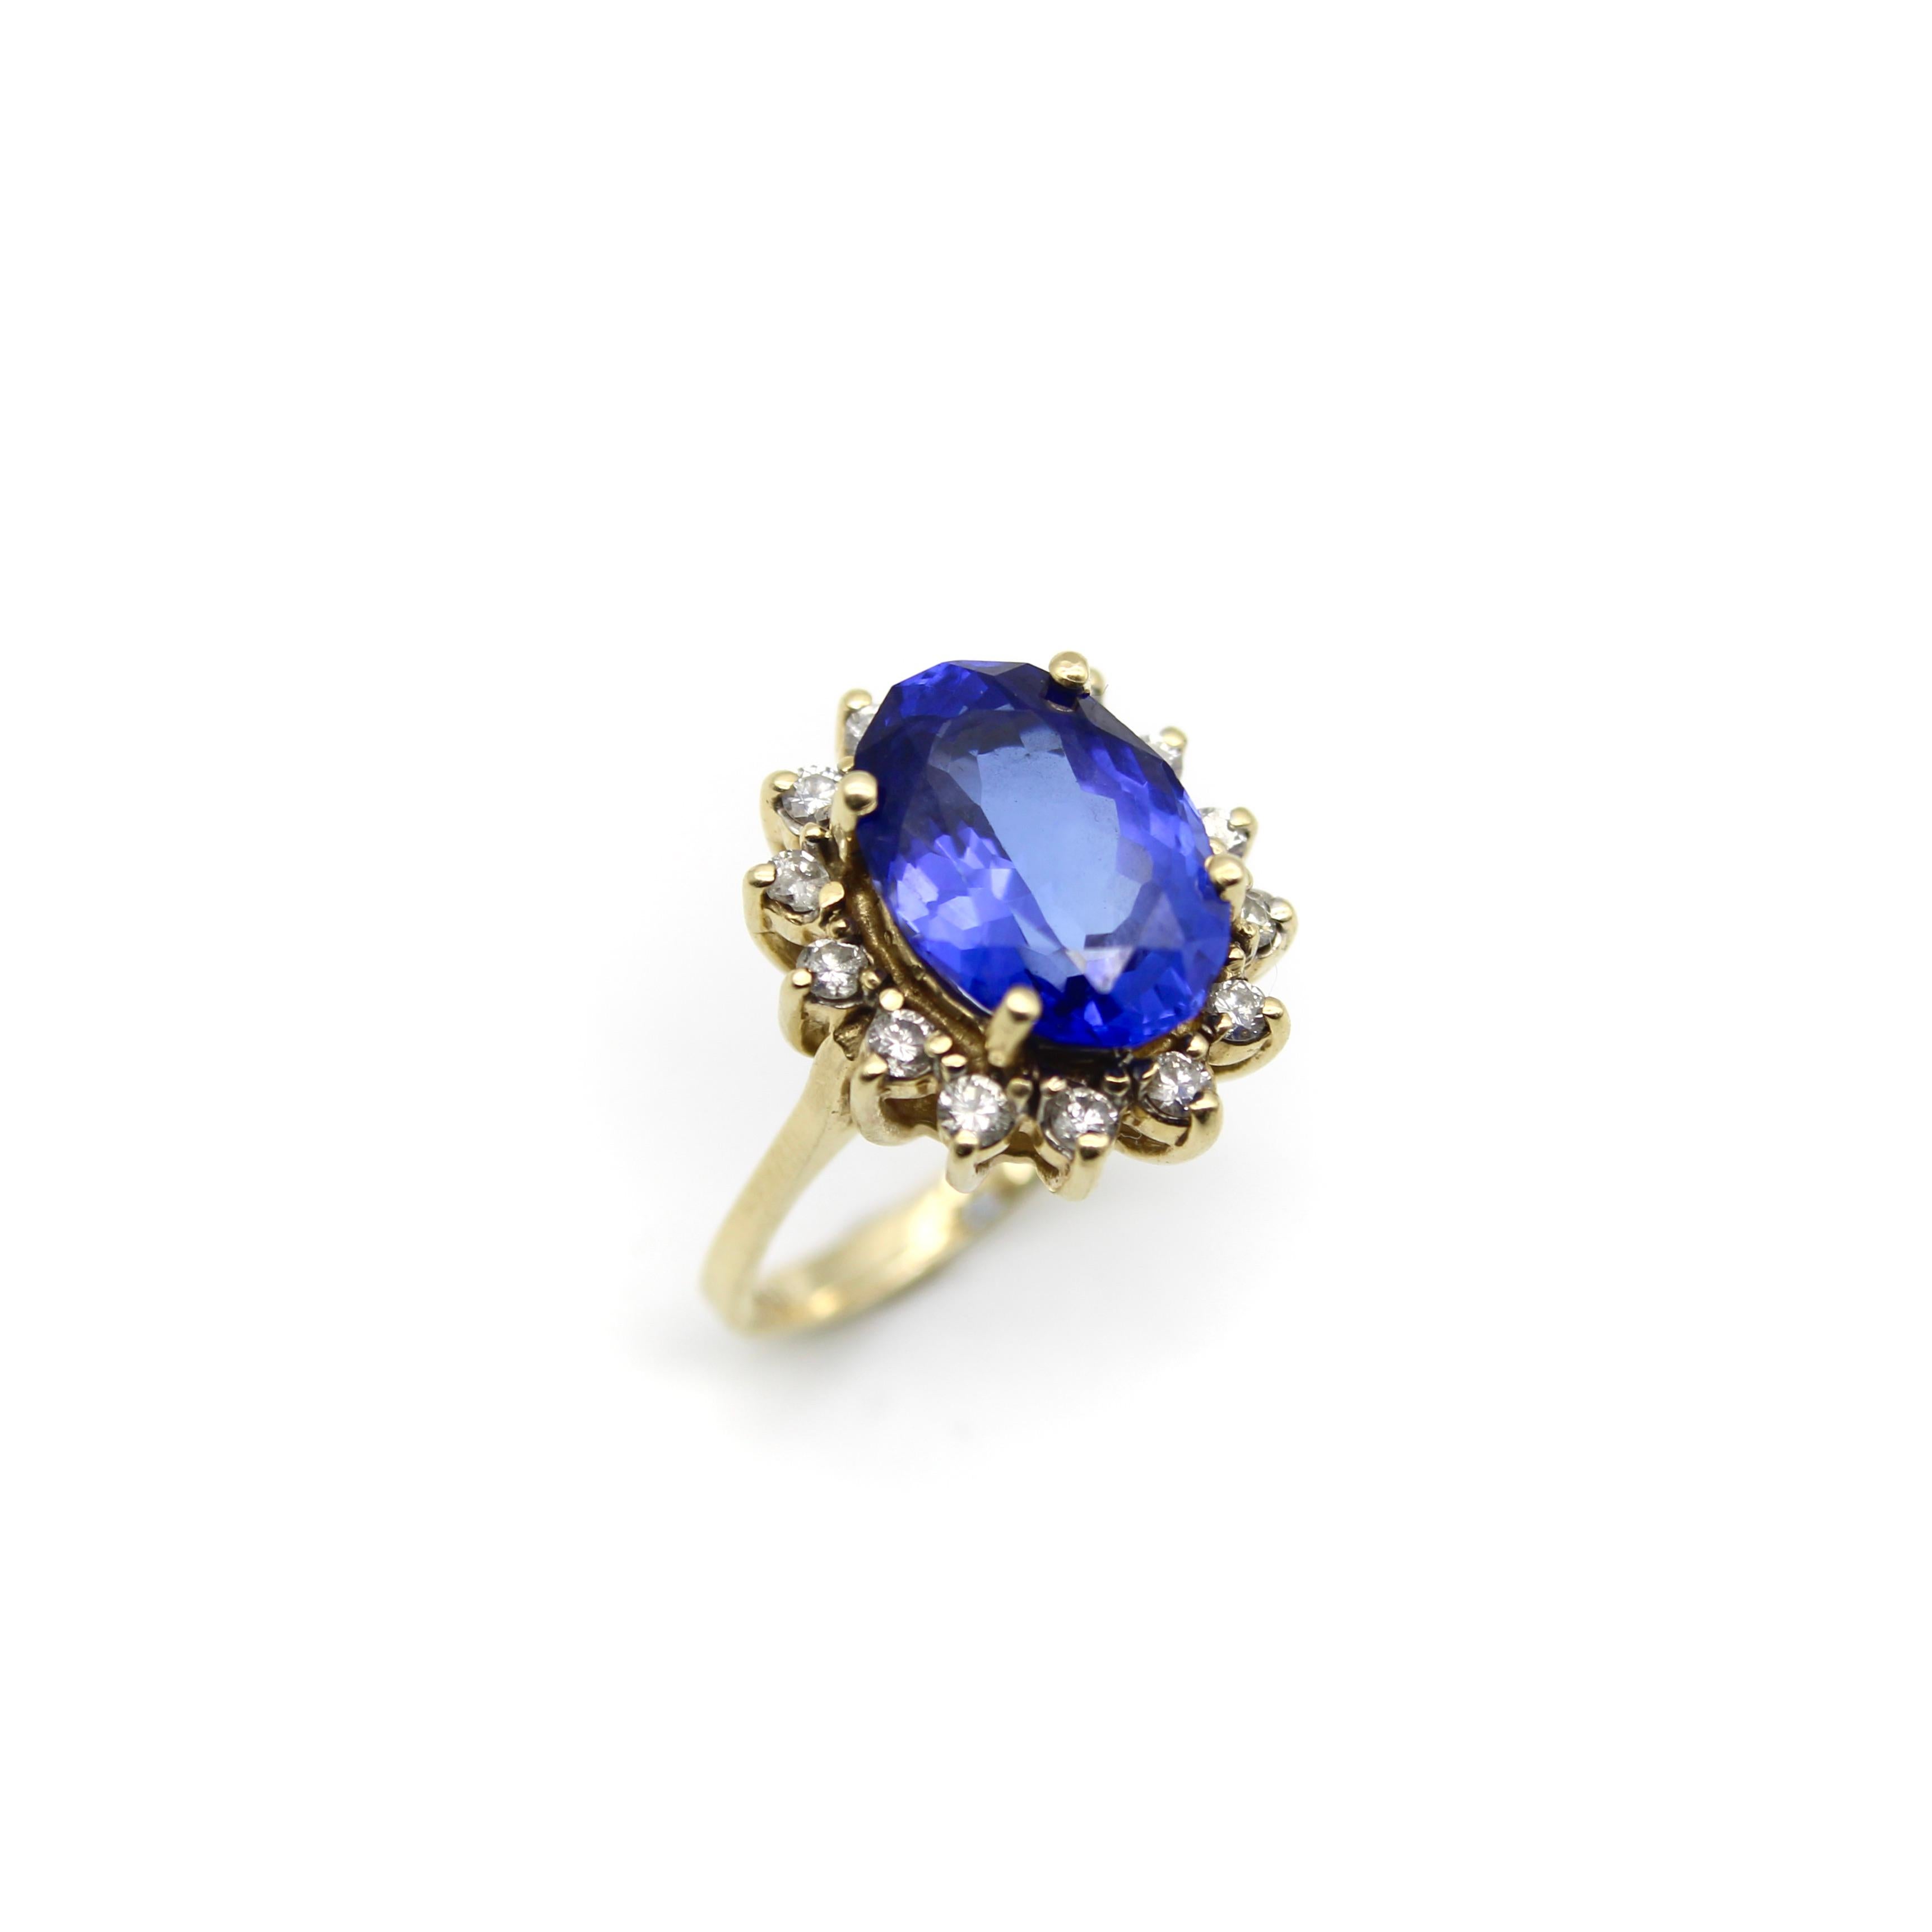 Cette magnifique bague vintage en or 14k présente une tanzanite ovale encadrée par un halo de diamants ronds de taille brillant. La tanzanite est d'une magnifique couleur bleue riche avec des nuances violettes, qui est considérée comme l'une des